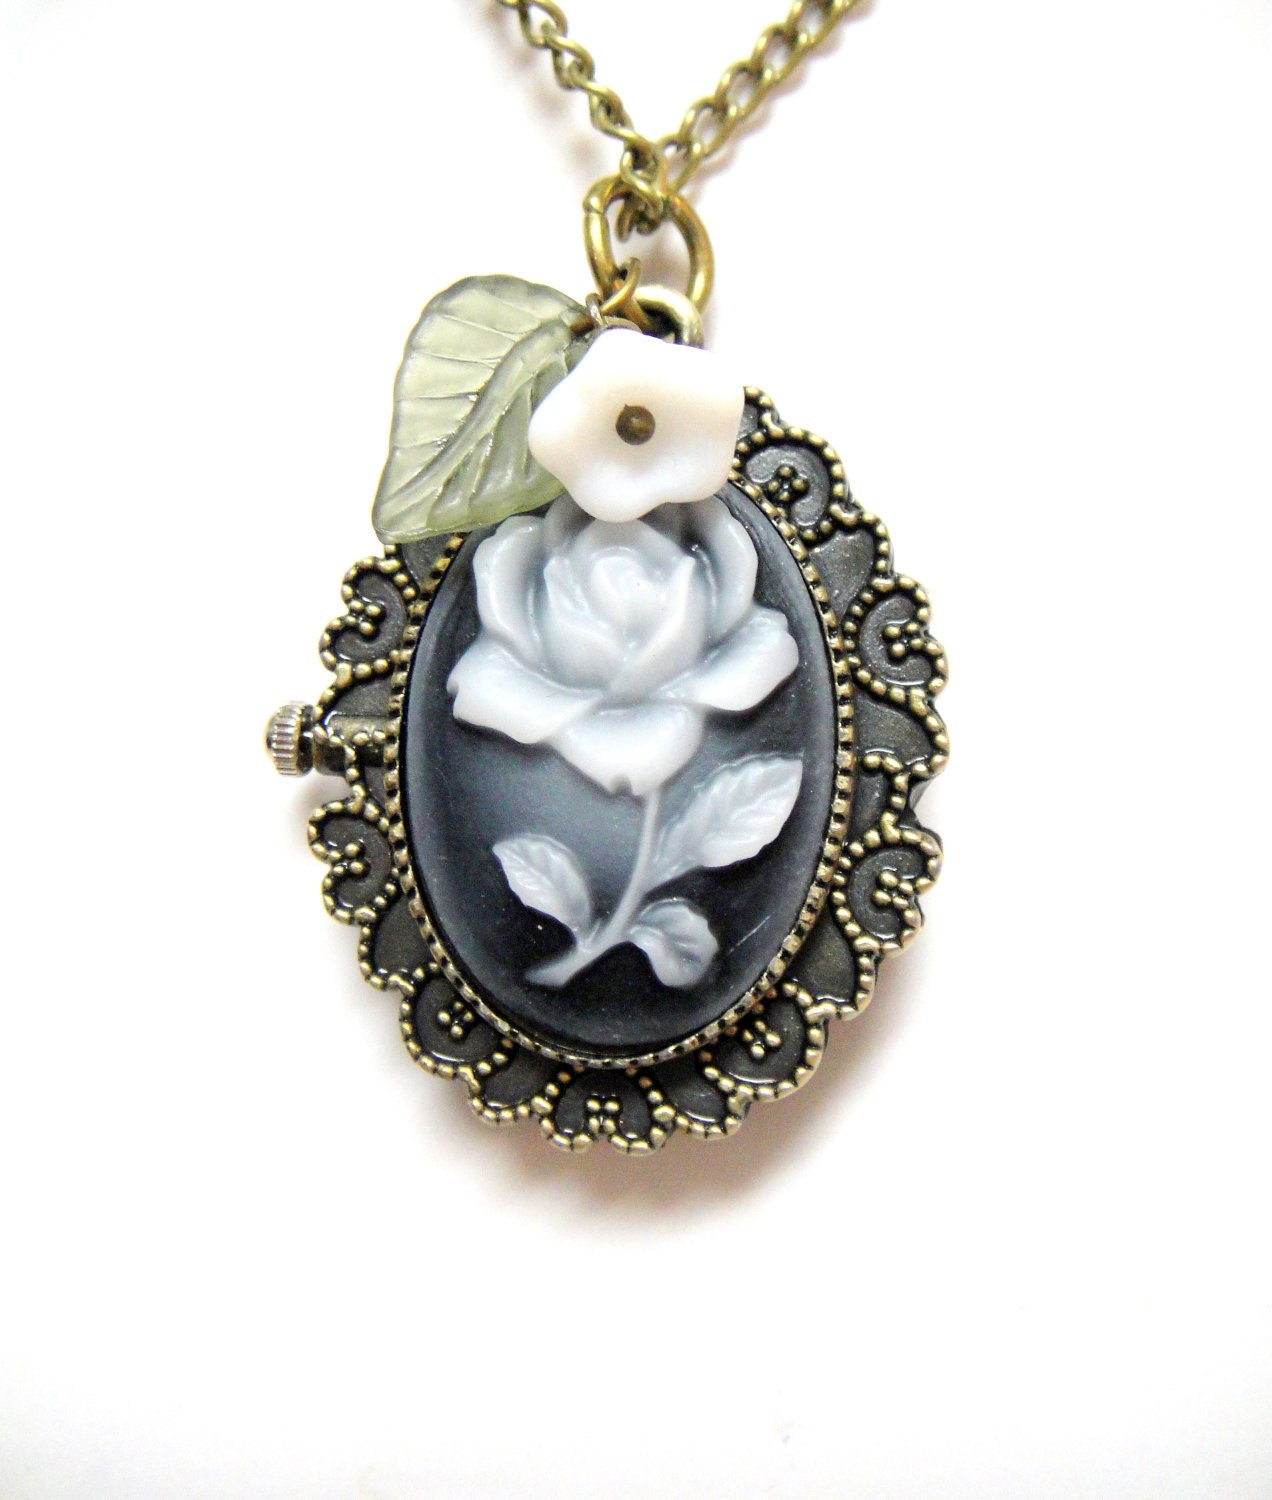 Flower Pocket Watch -  Blue Flower Watch, White Flower, Leaf Accent - Flower Necklace Pocket Watch